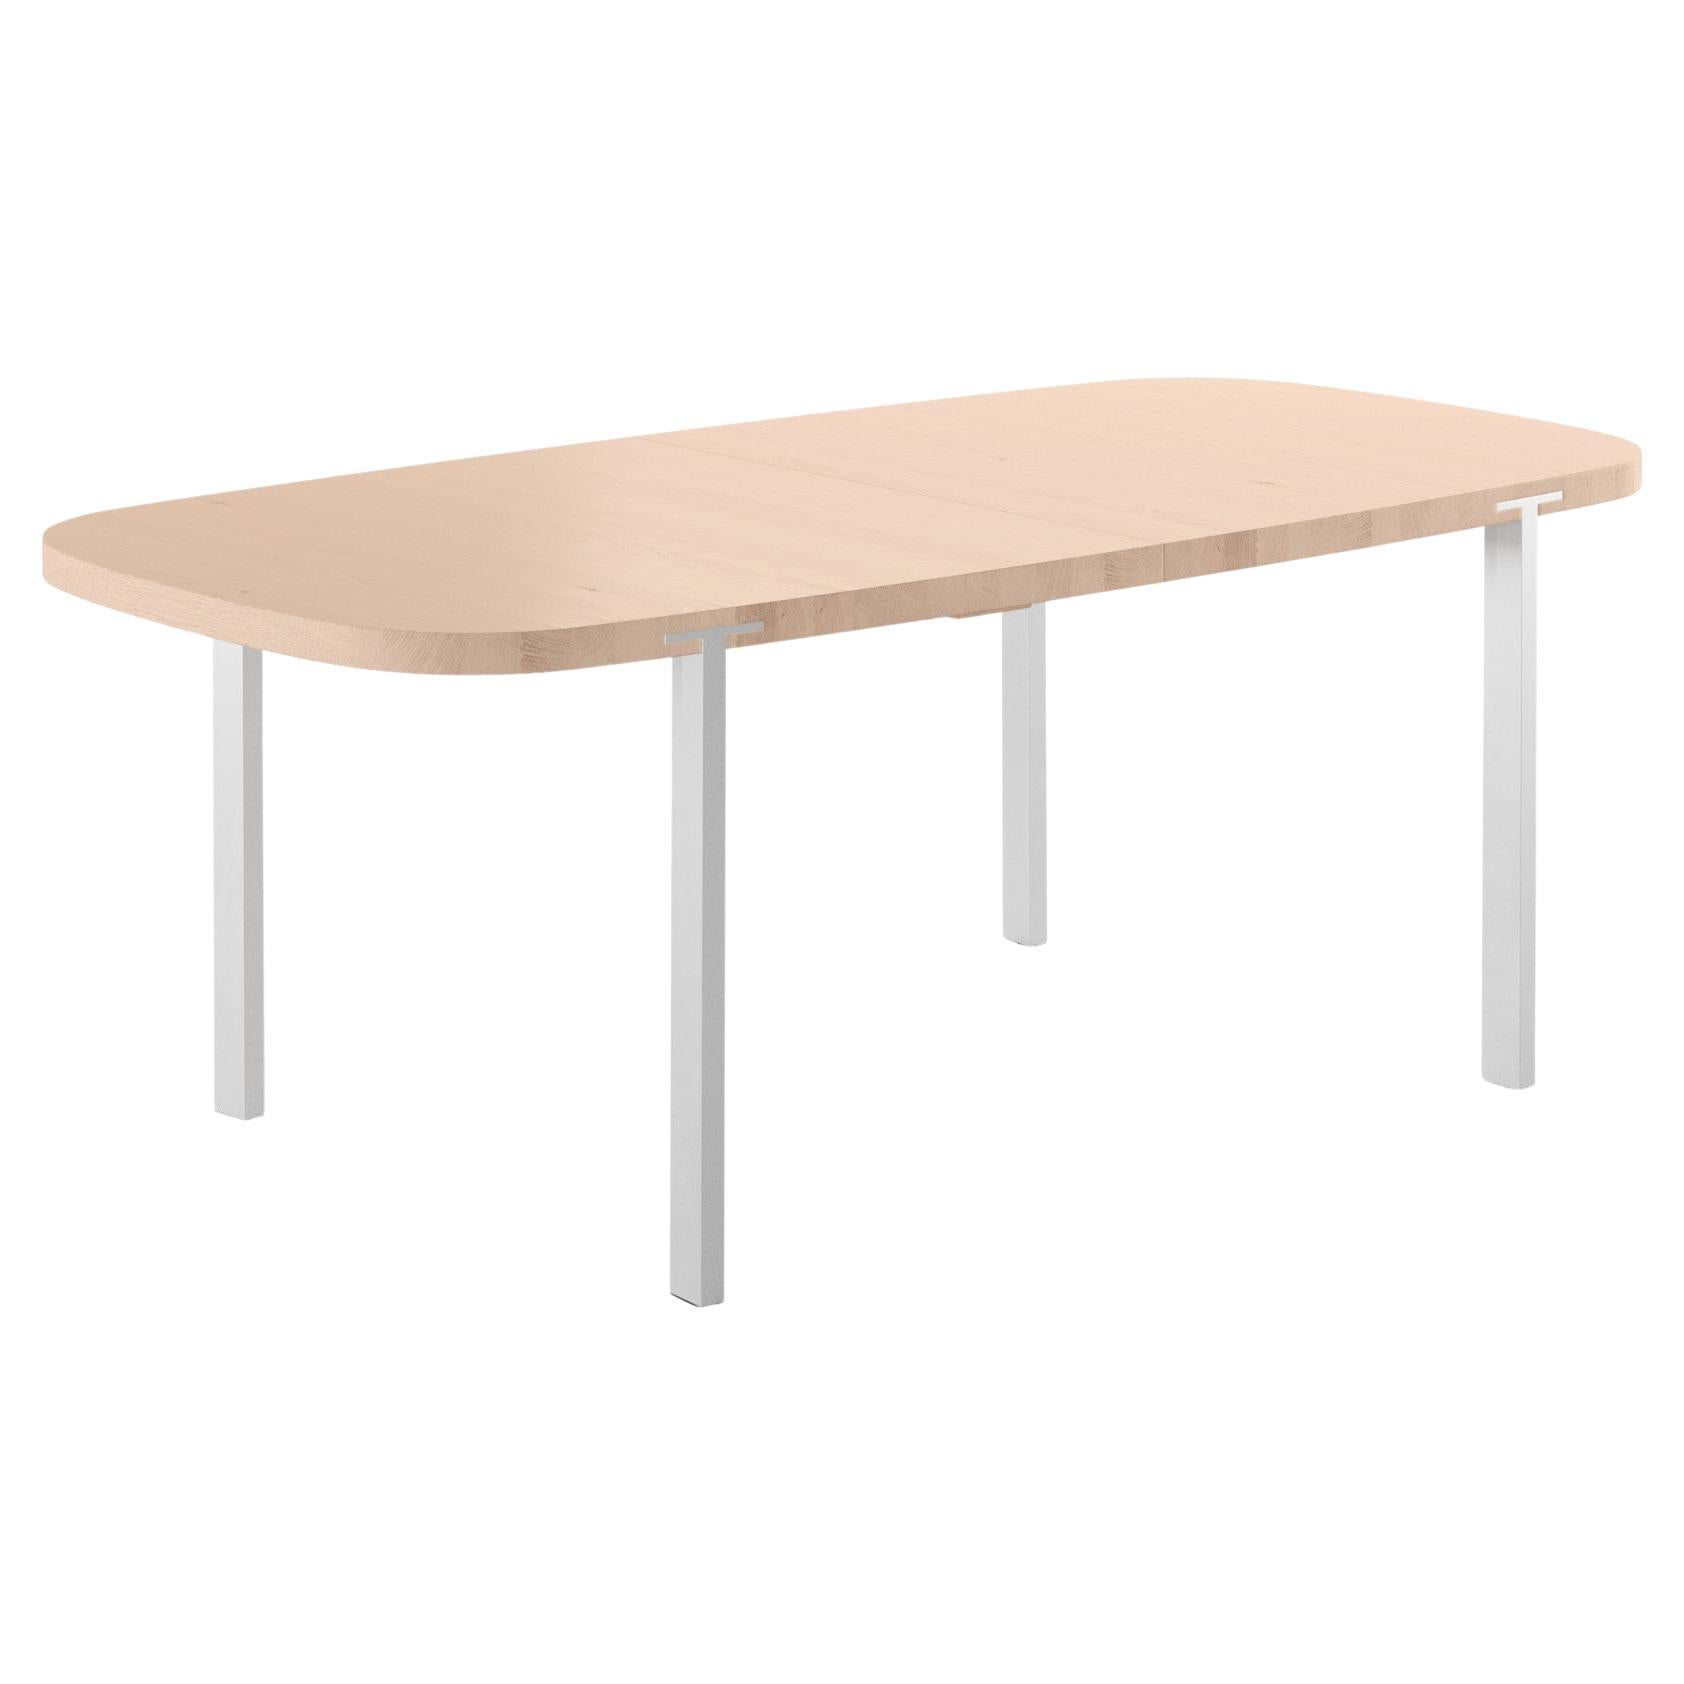 Super table Ellipse GM2122, en chêne, design Nissen & Gehl MDD